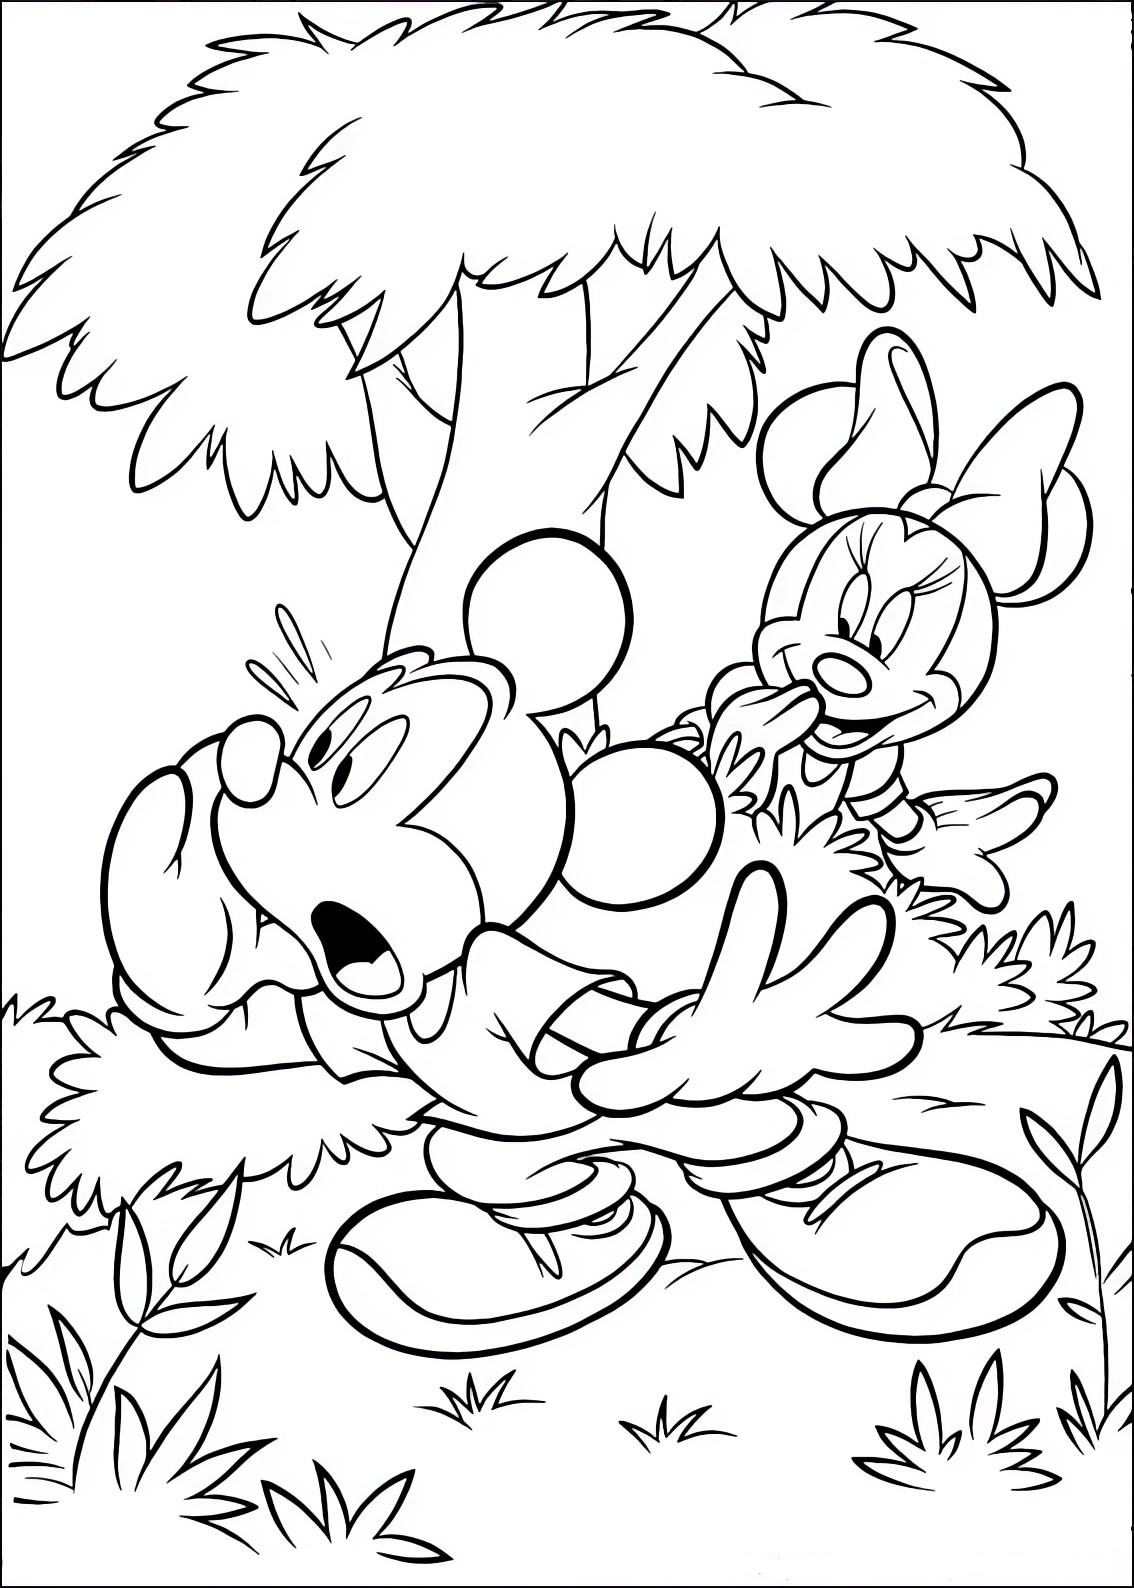 Disegno da colorare di Topolino (Mickey Mouse) che cerca Minnie nascosta fra i cespugli